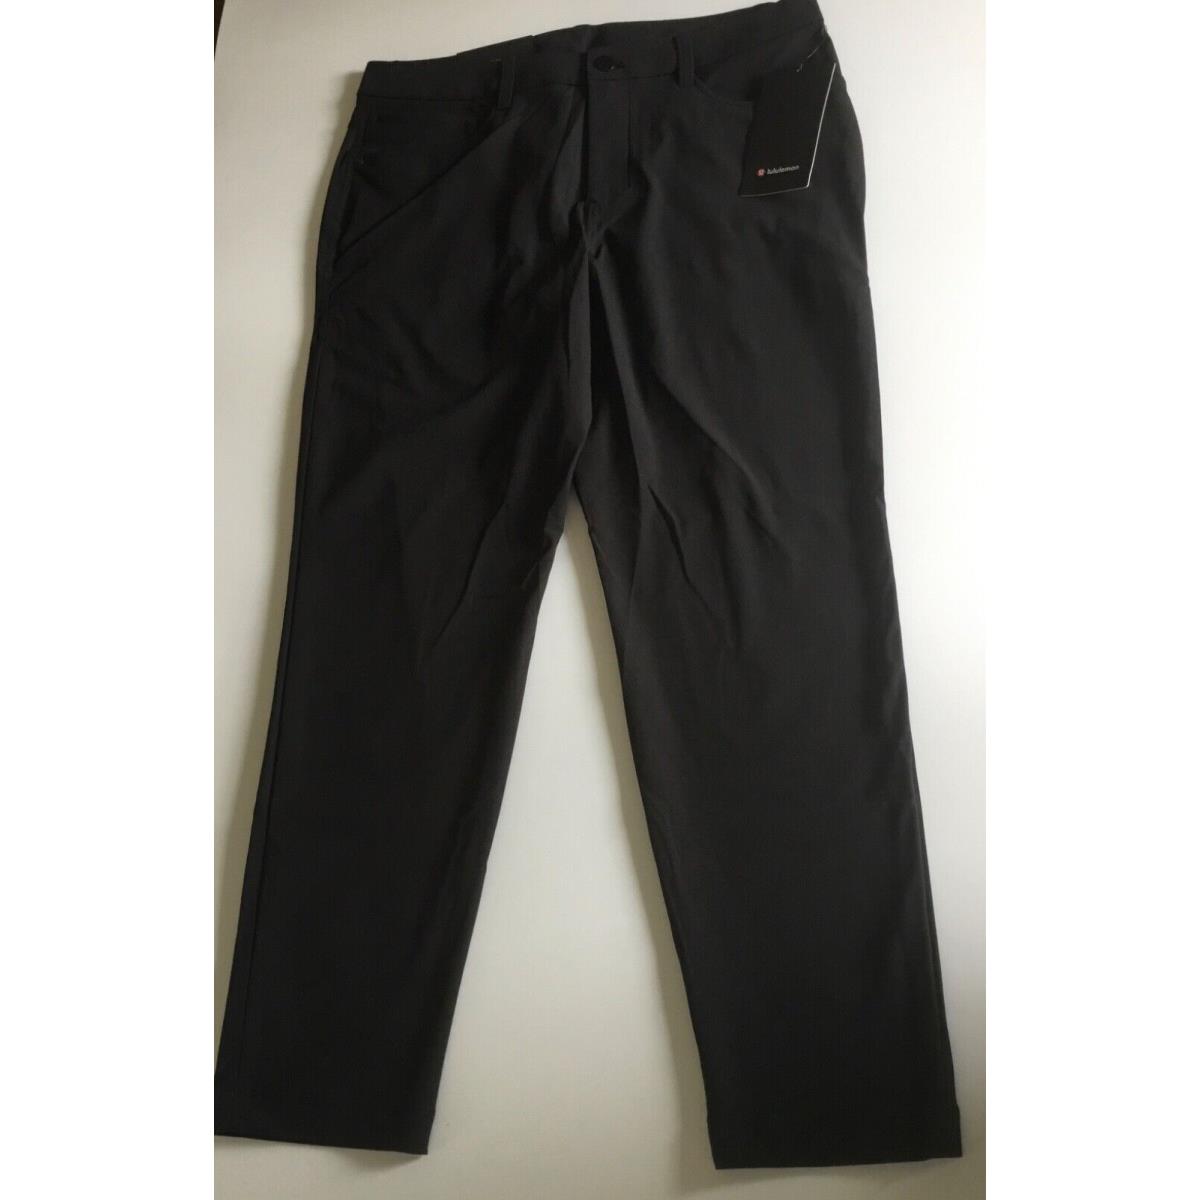 Lululemon Men s Abc Pant Slim Black LM5AQRS Size 33 x 30